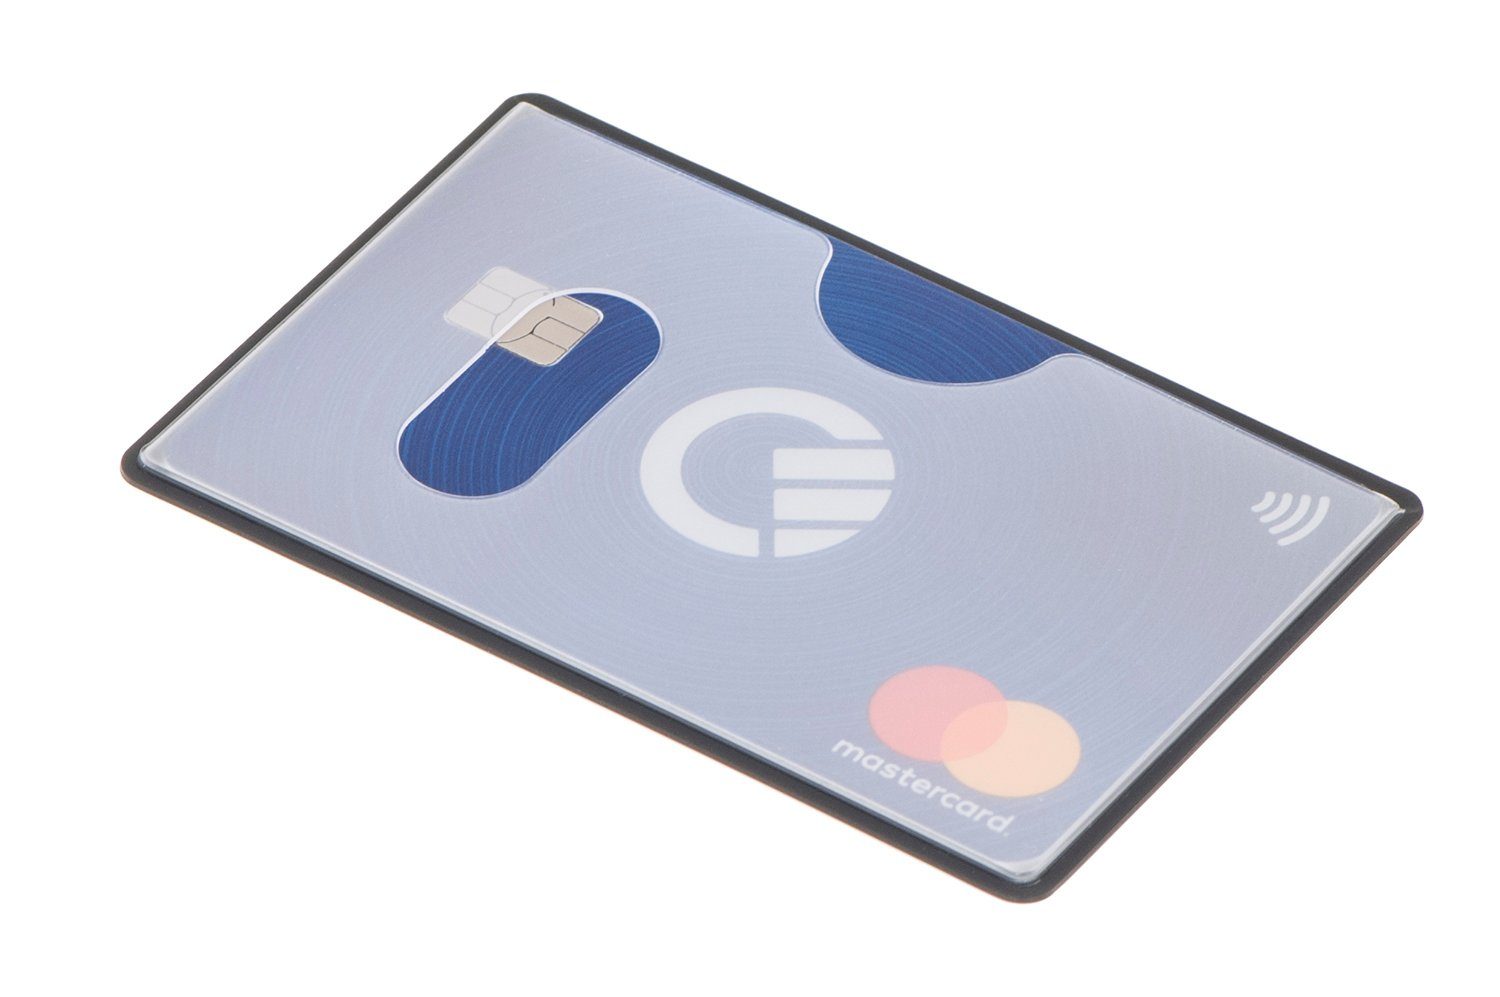 valonic Etui valonic - transparent, mm, oben Einschub RFID-Block 6 x RFID Stück Scheckkarte NFZ 59 Schutz, Kreditkarte, abgeschirmt, Kreditkartenhüllen 91